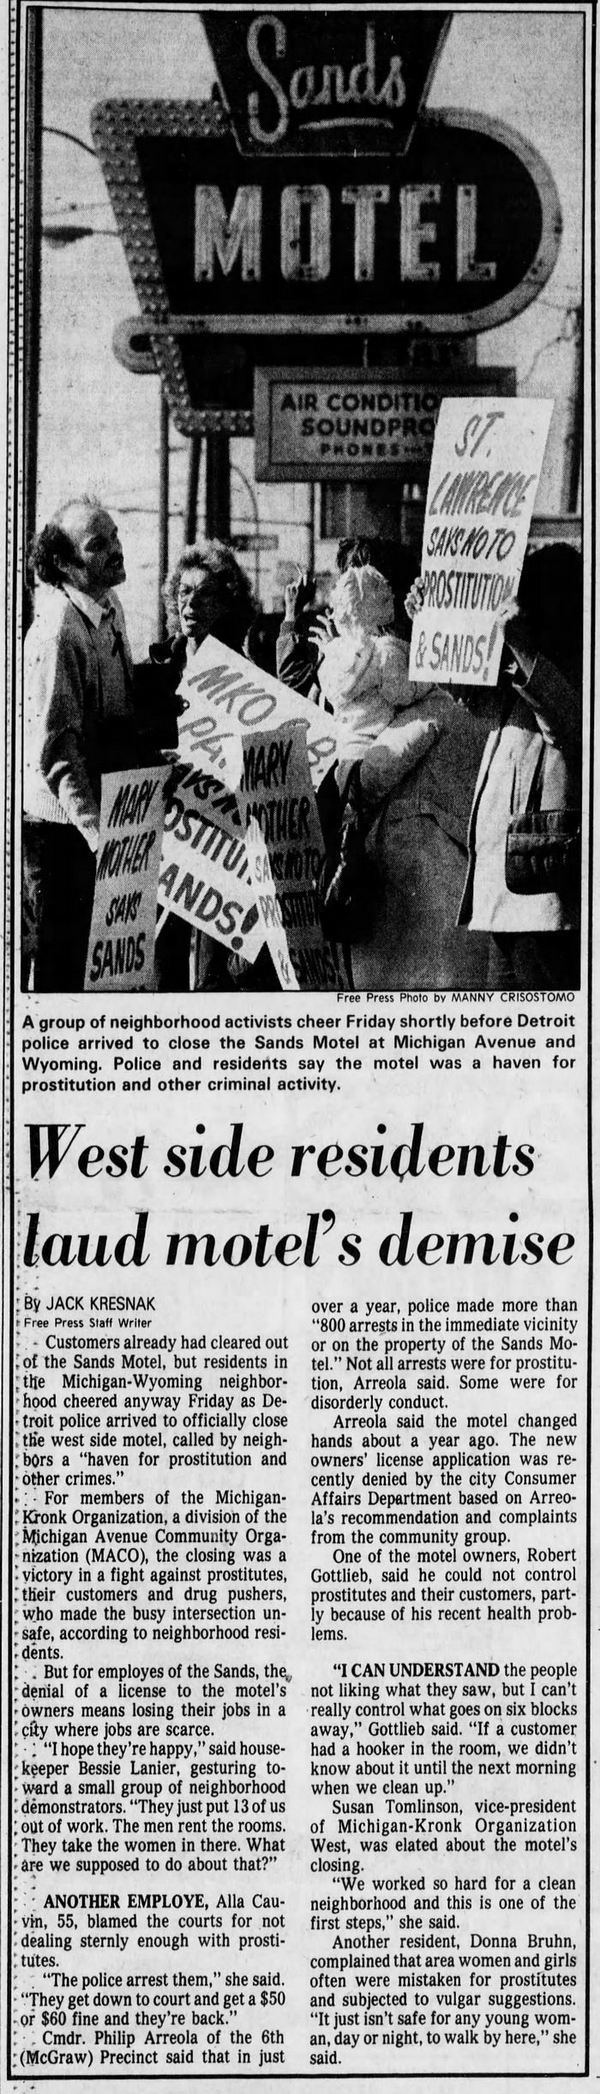 Sands Motel (Victory Inn) - October 1983 Uproar Over Crime